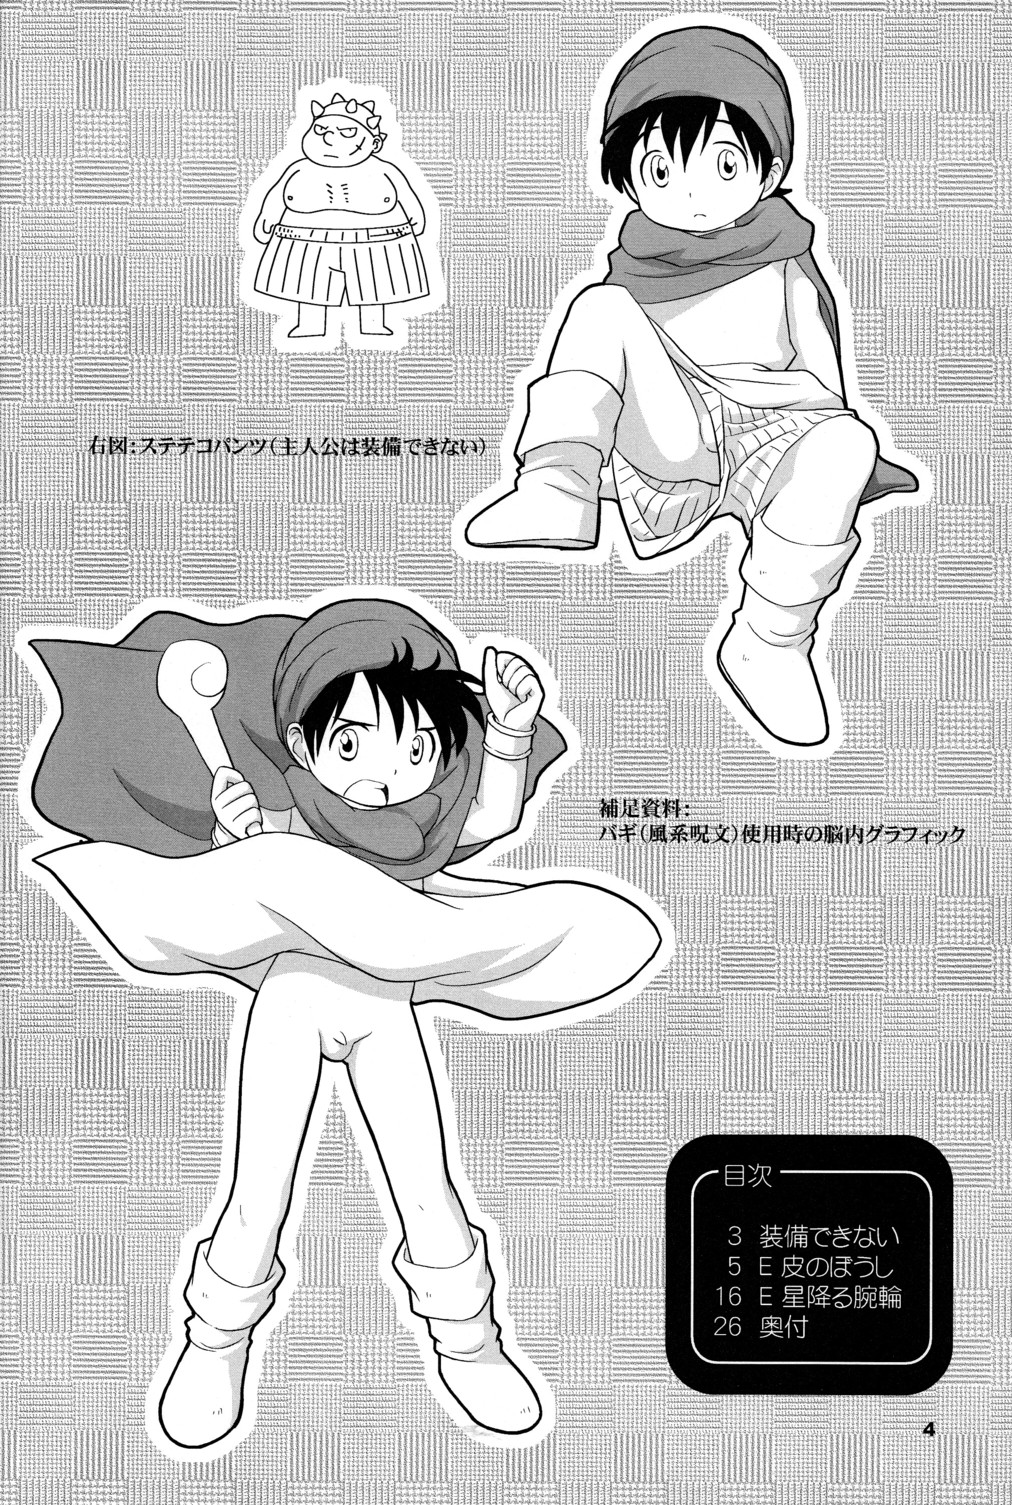 (Shotaket 10) [Tokuda (Ueda Yuu)] Hoshifuru Seisui (Dragon Quest V) page 4 full